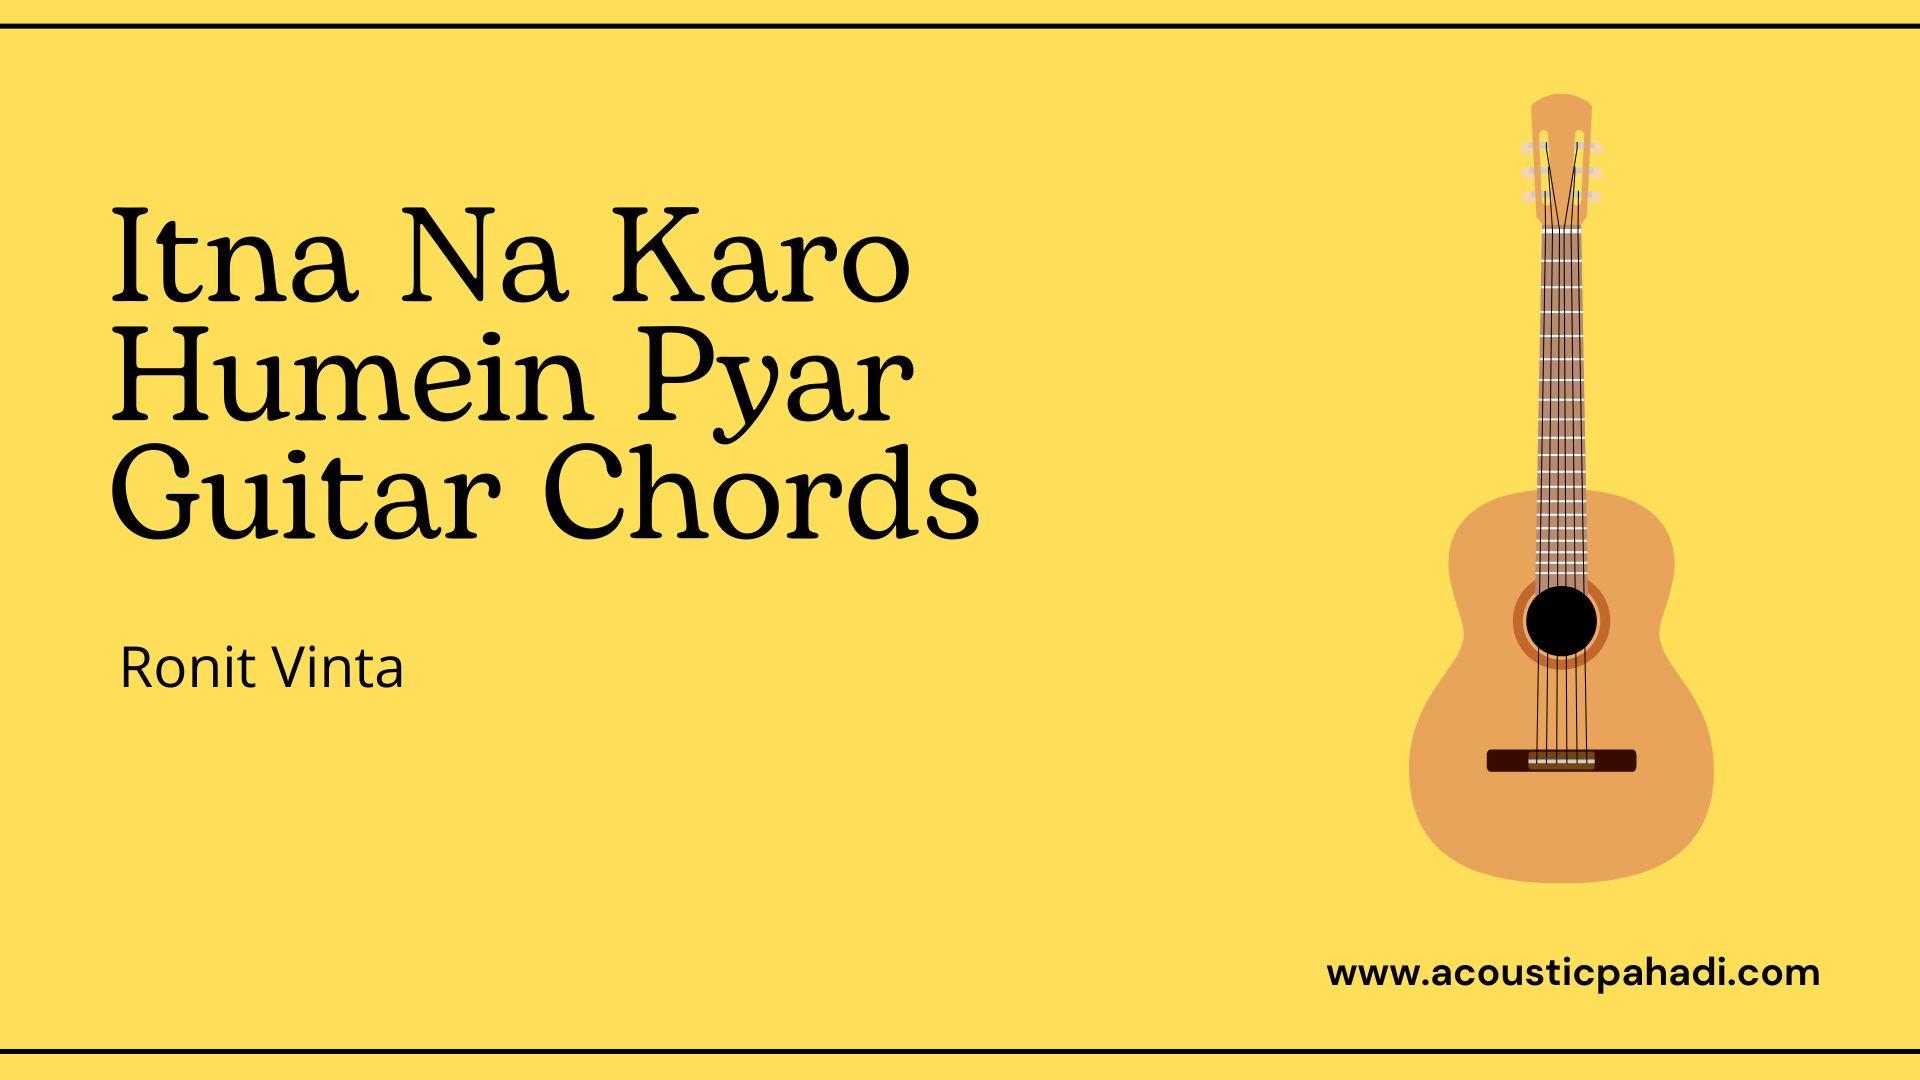 Itna Na Karo Humein Pyar Guitar Chords Ronit Vinta